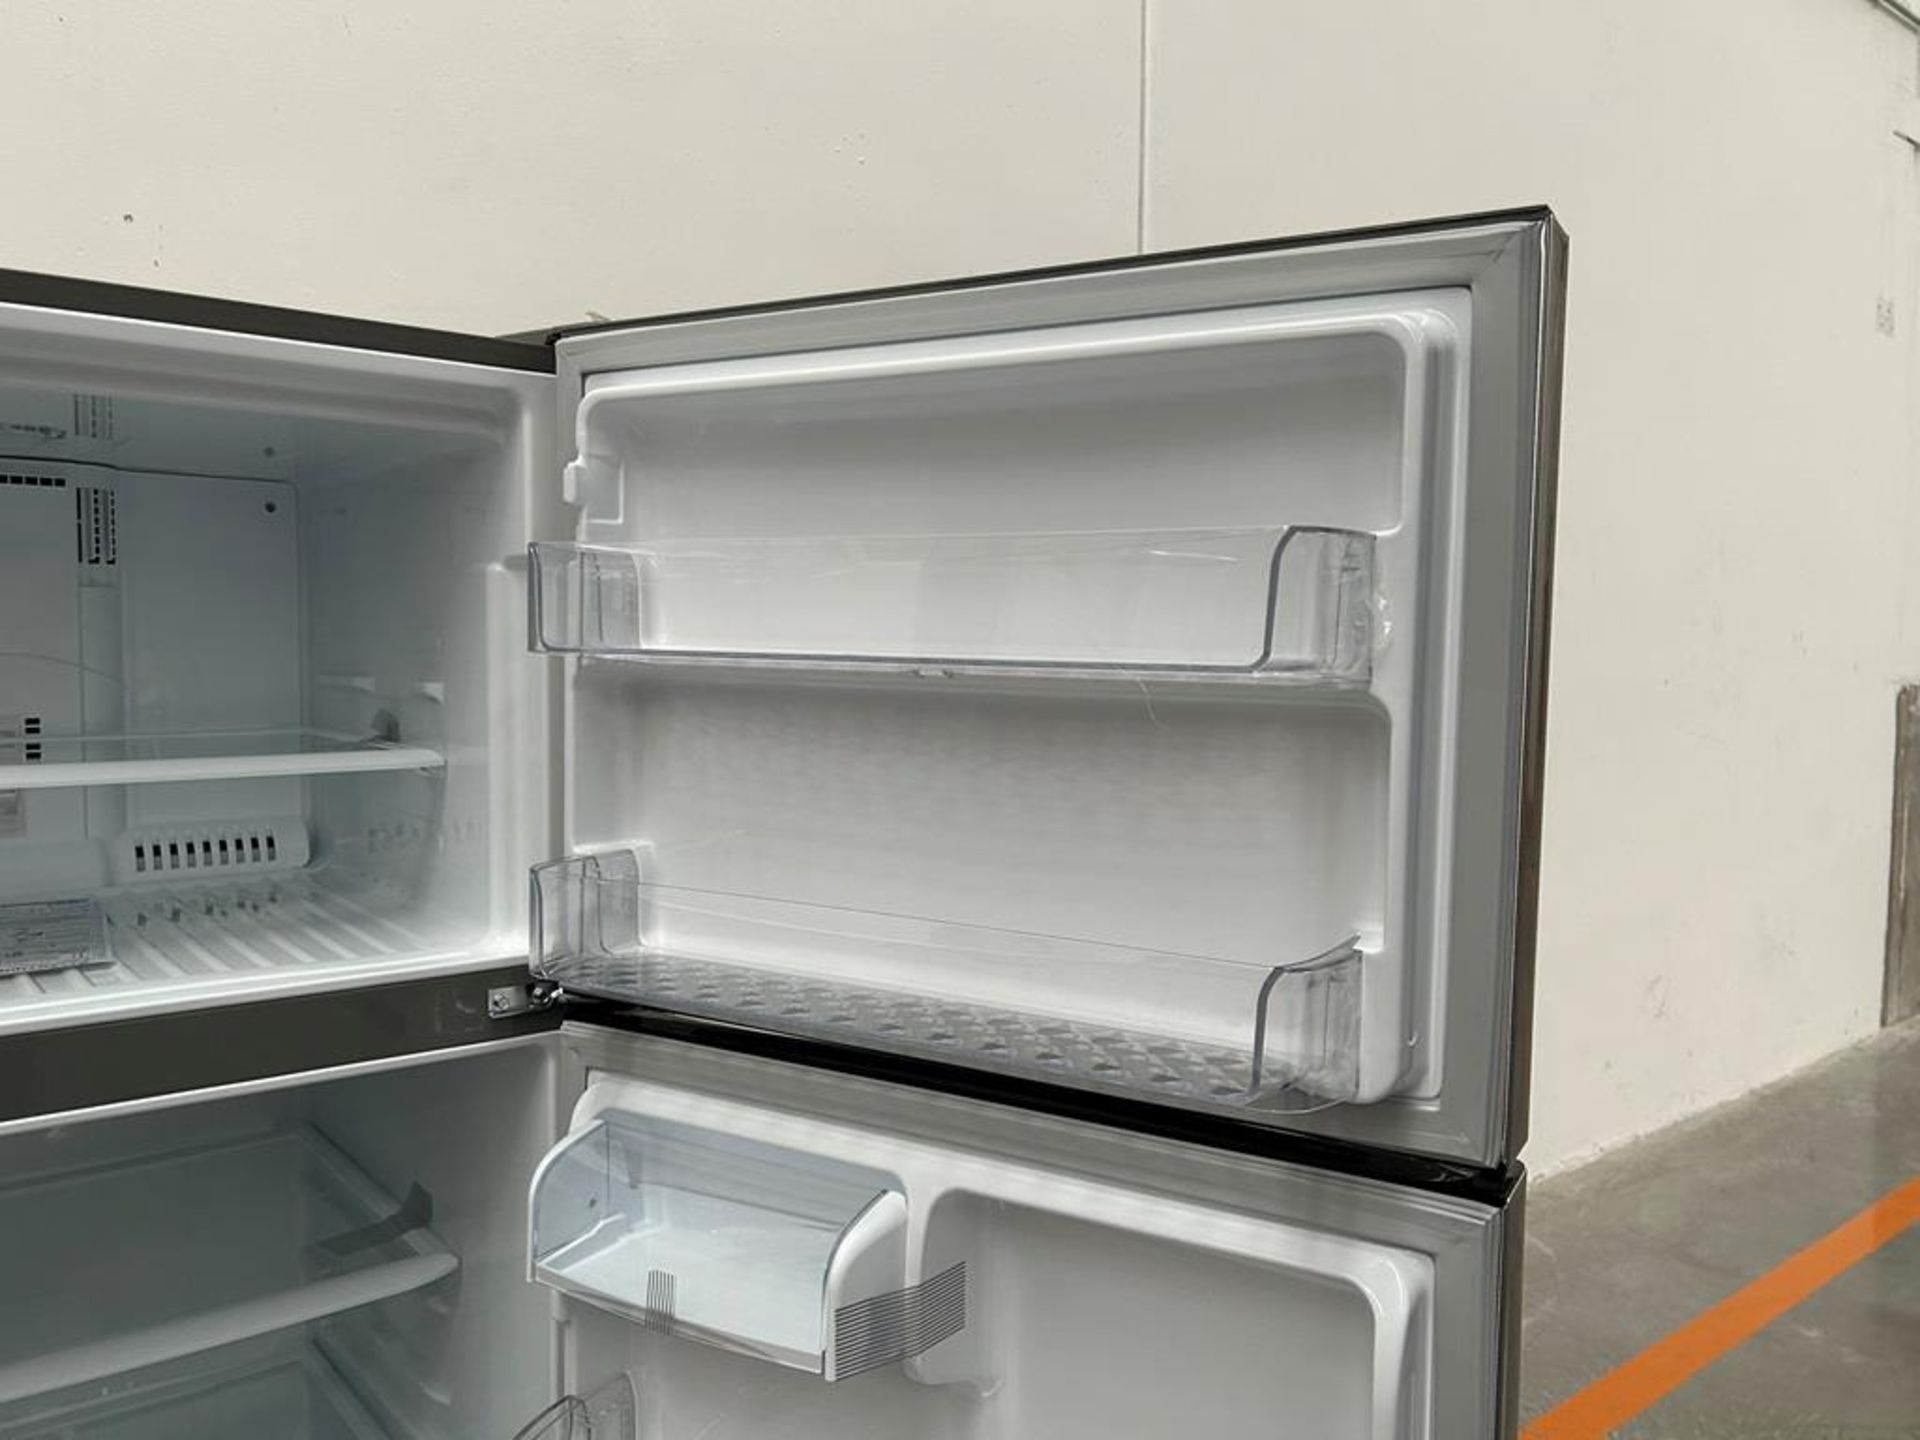 (NUEVO) Refrigerador Marca LG, Modelo LT57BPSX, Serie 1X171, Color GRIS - Image 9 of 12